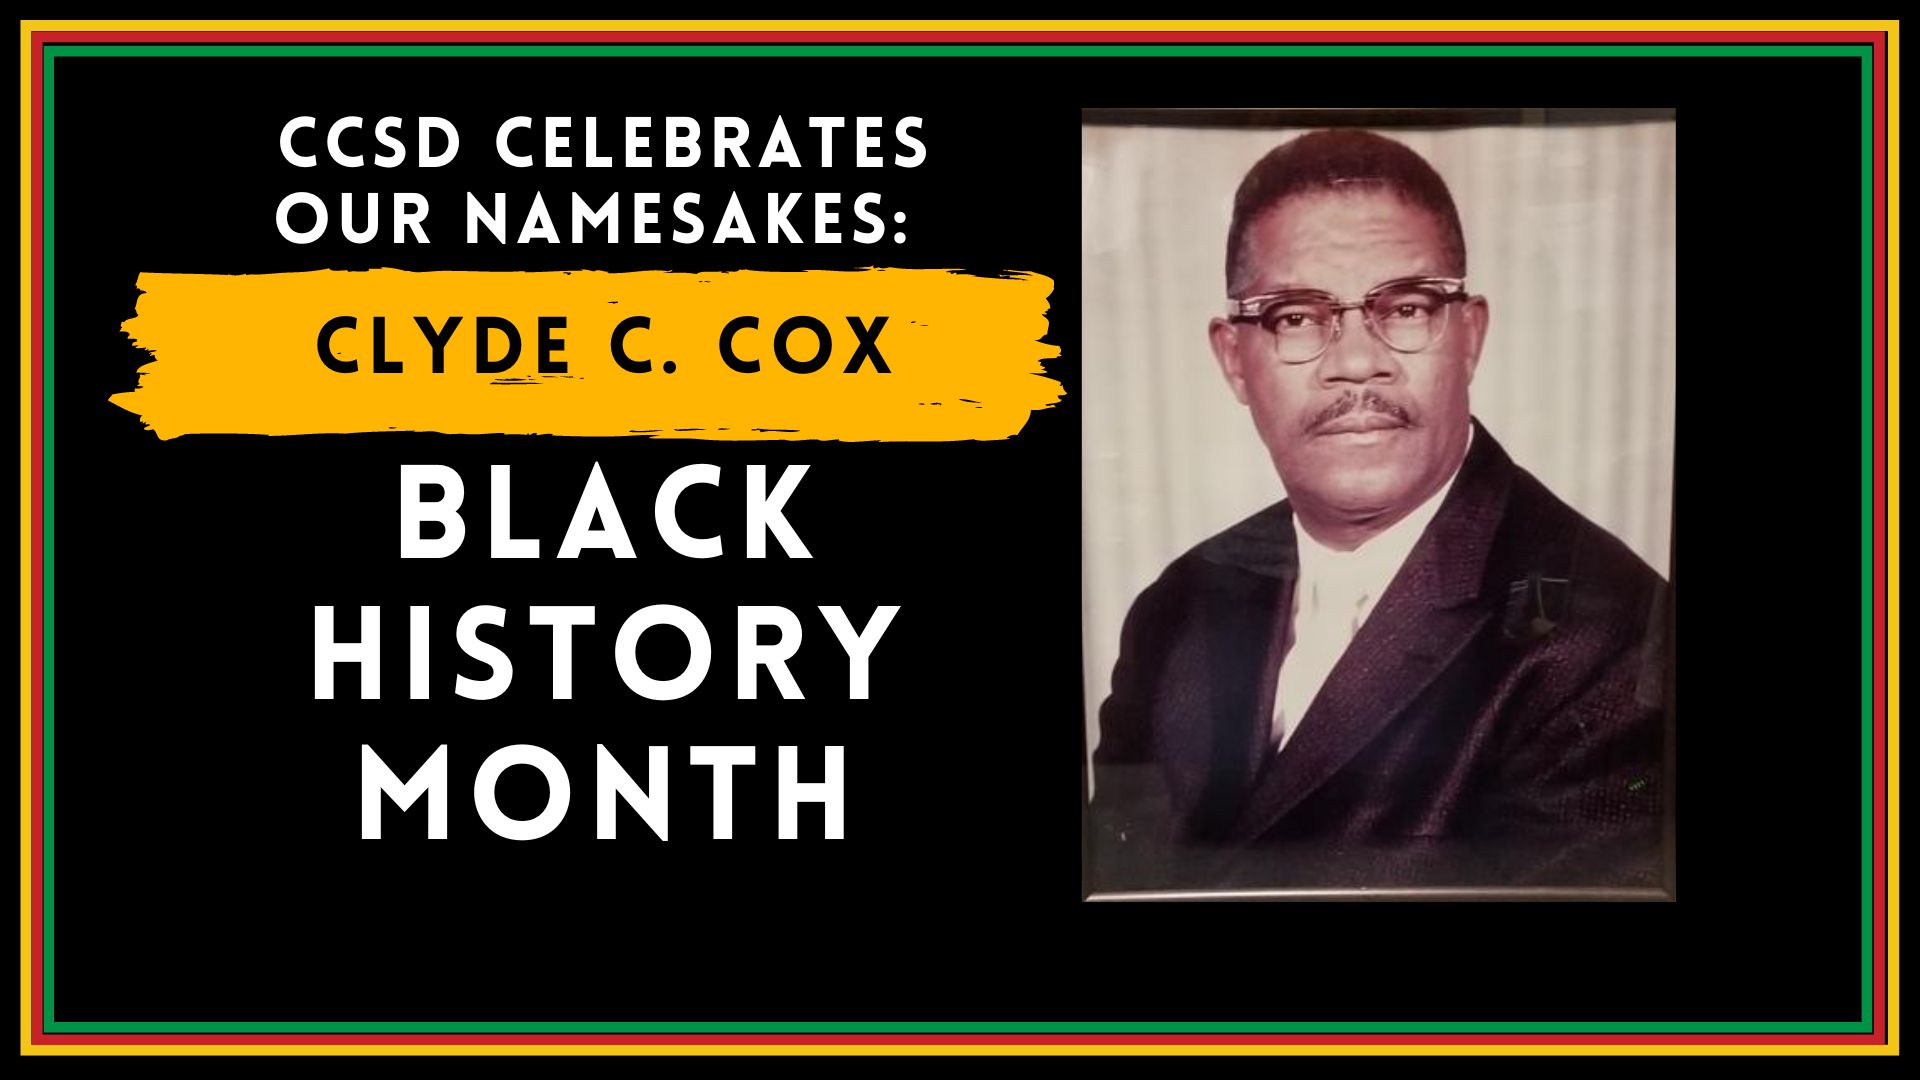 CCSD celebrates its namesakes: Clyde C. Cox